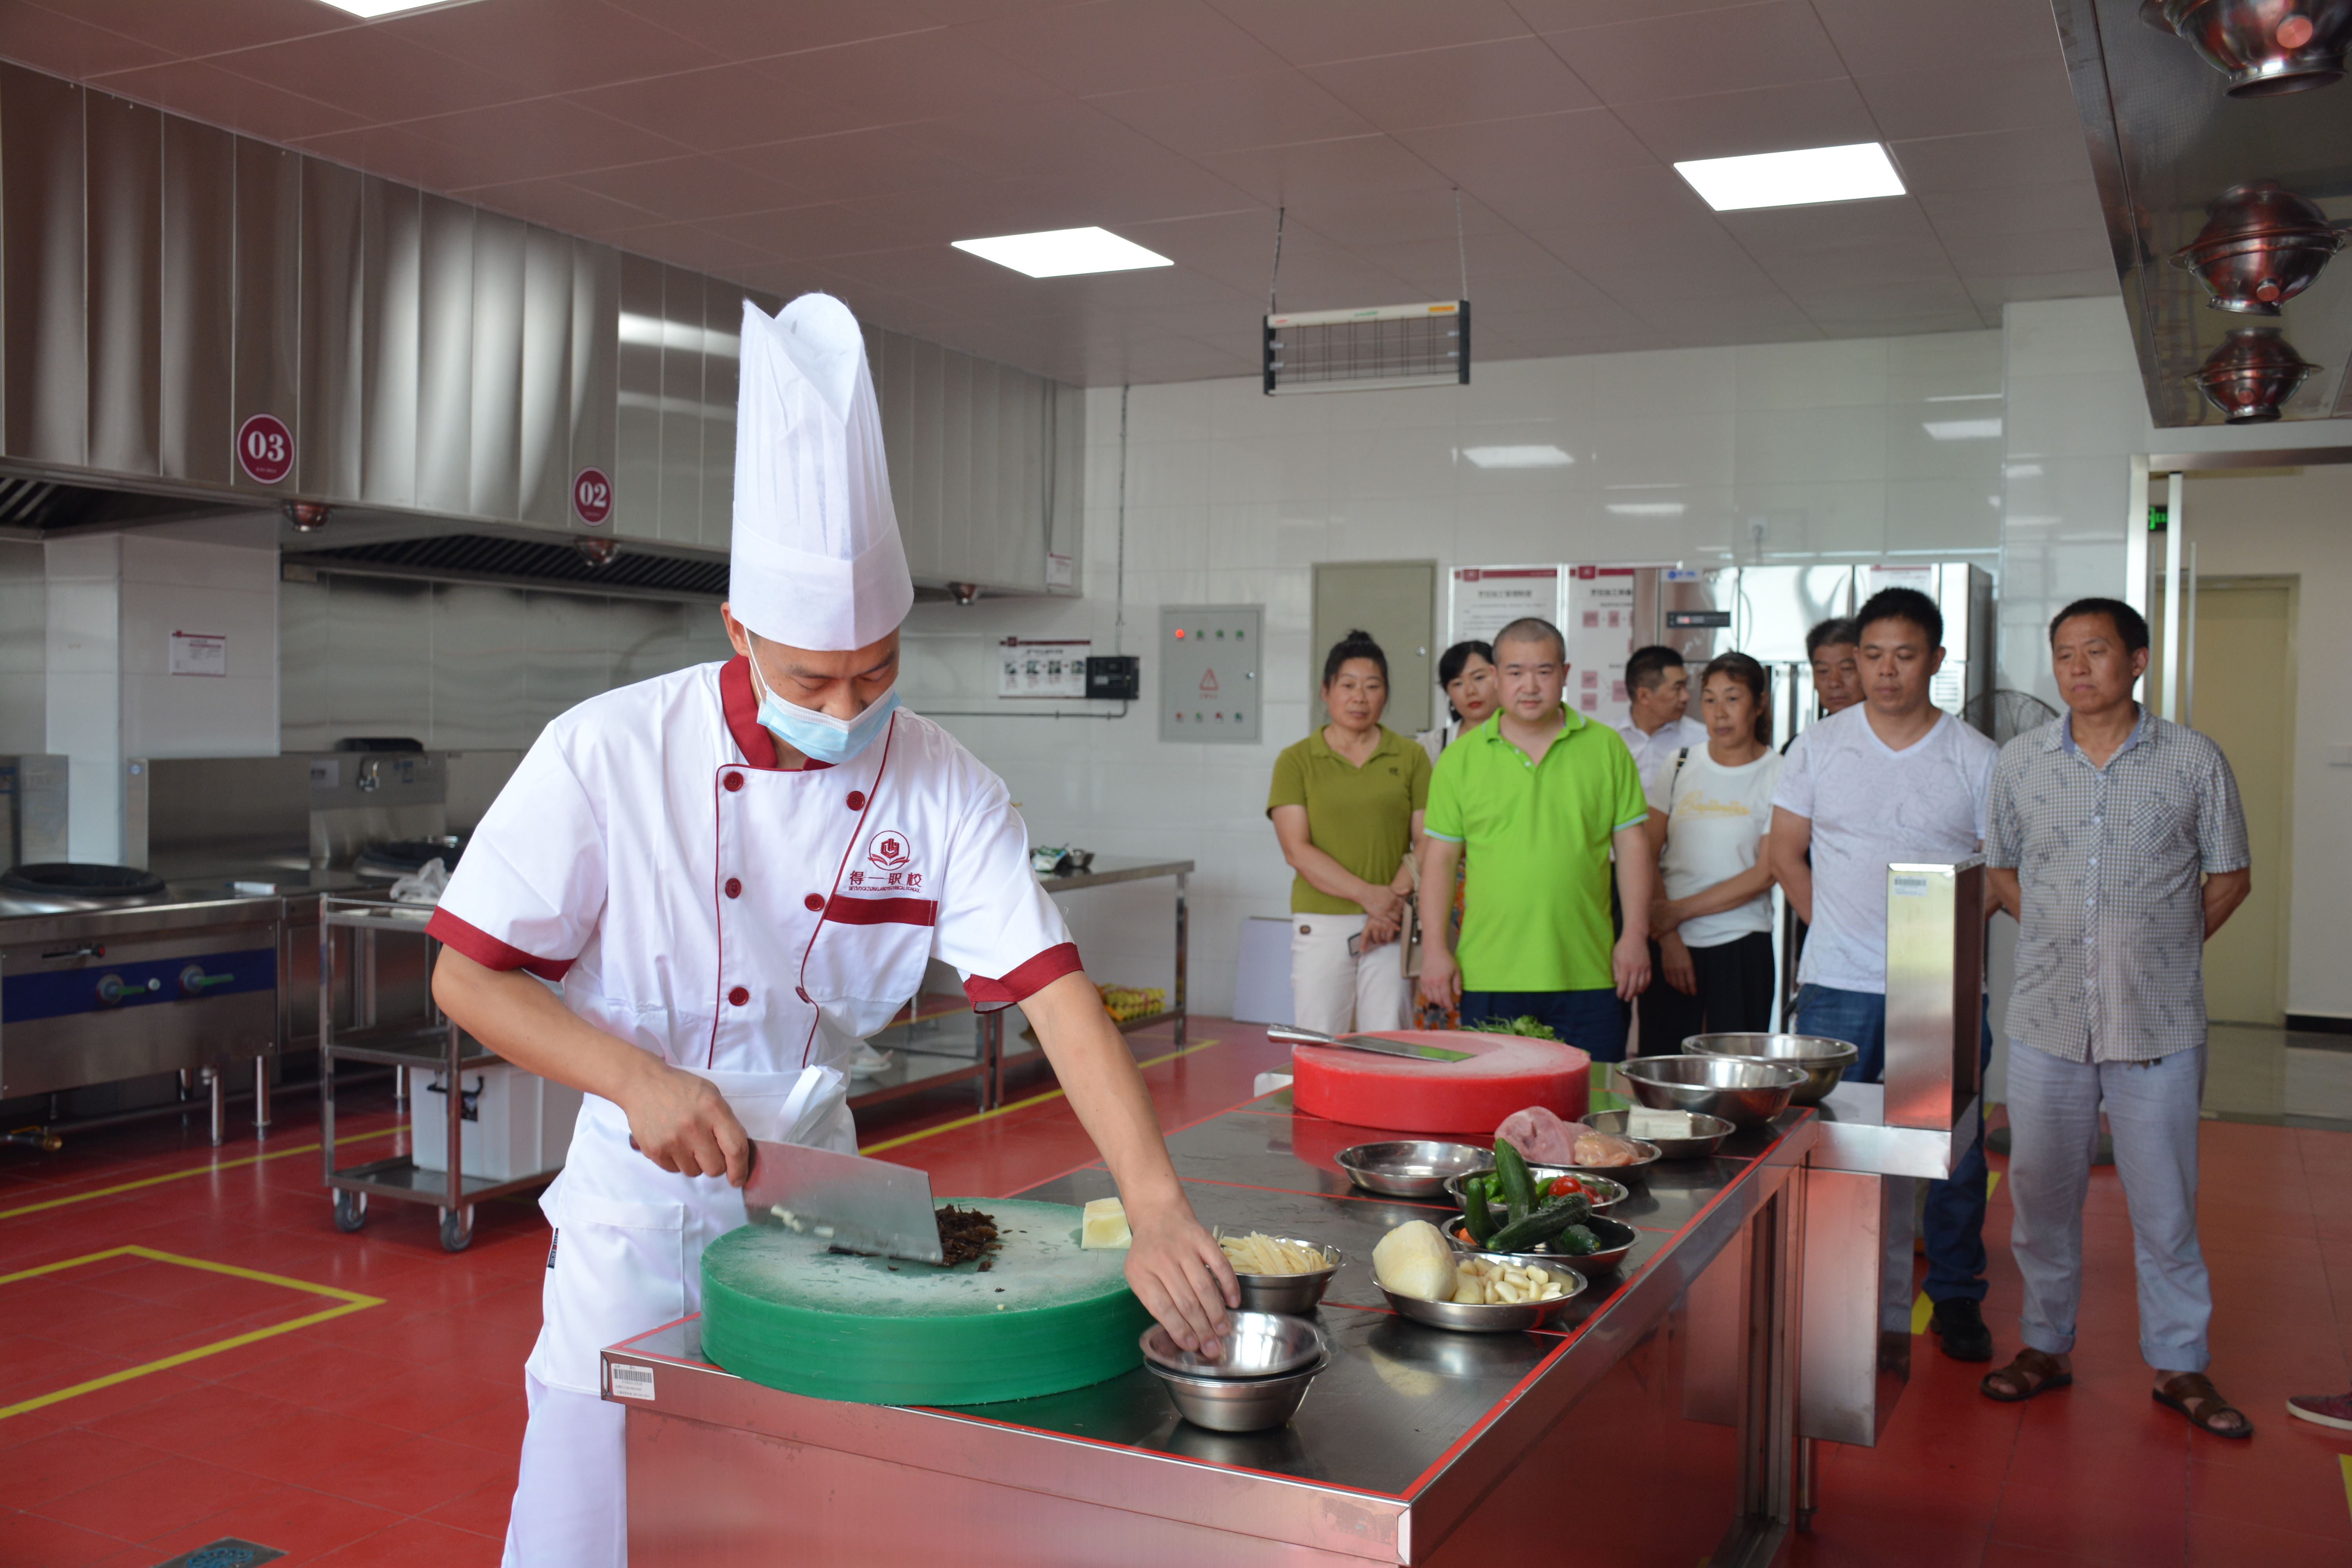 襄阳职业技术学院开展后勤厨务人员 技能知识培训